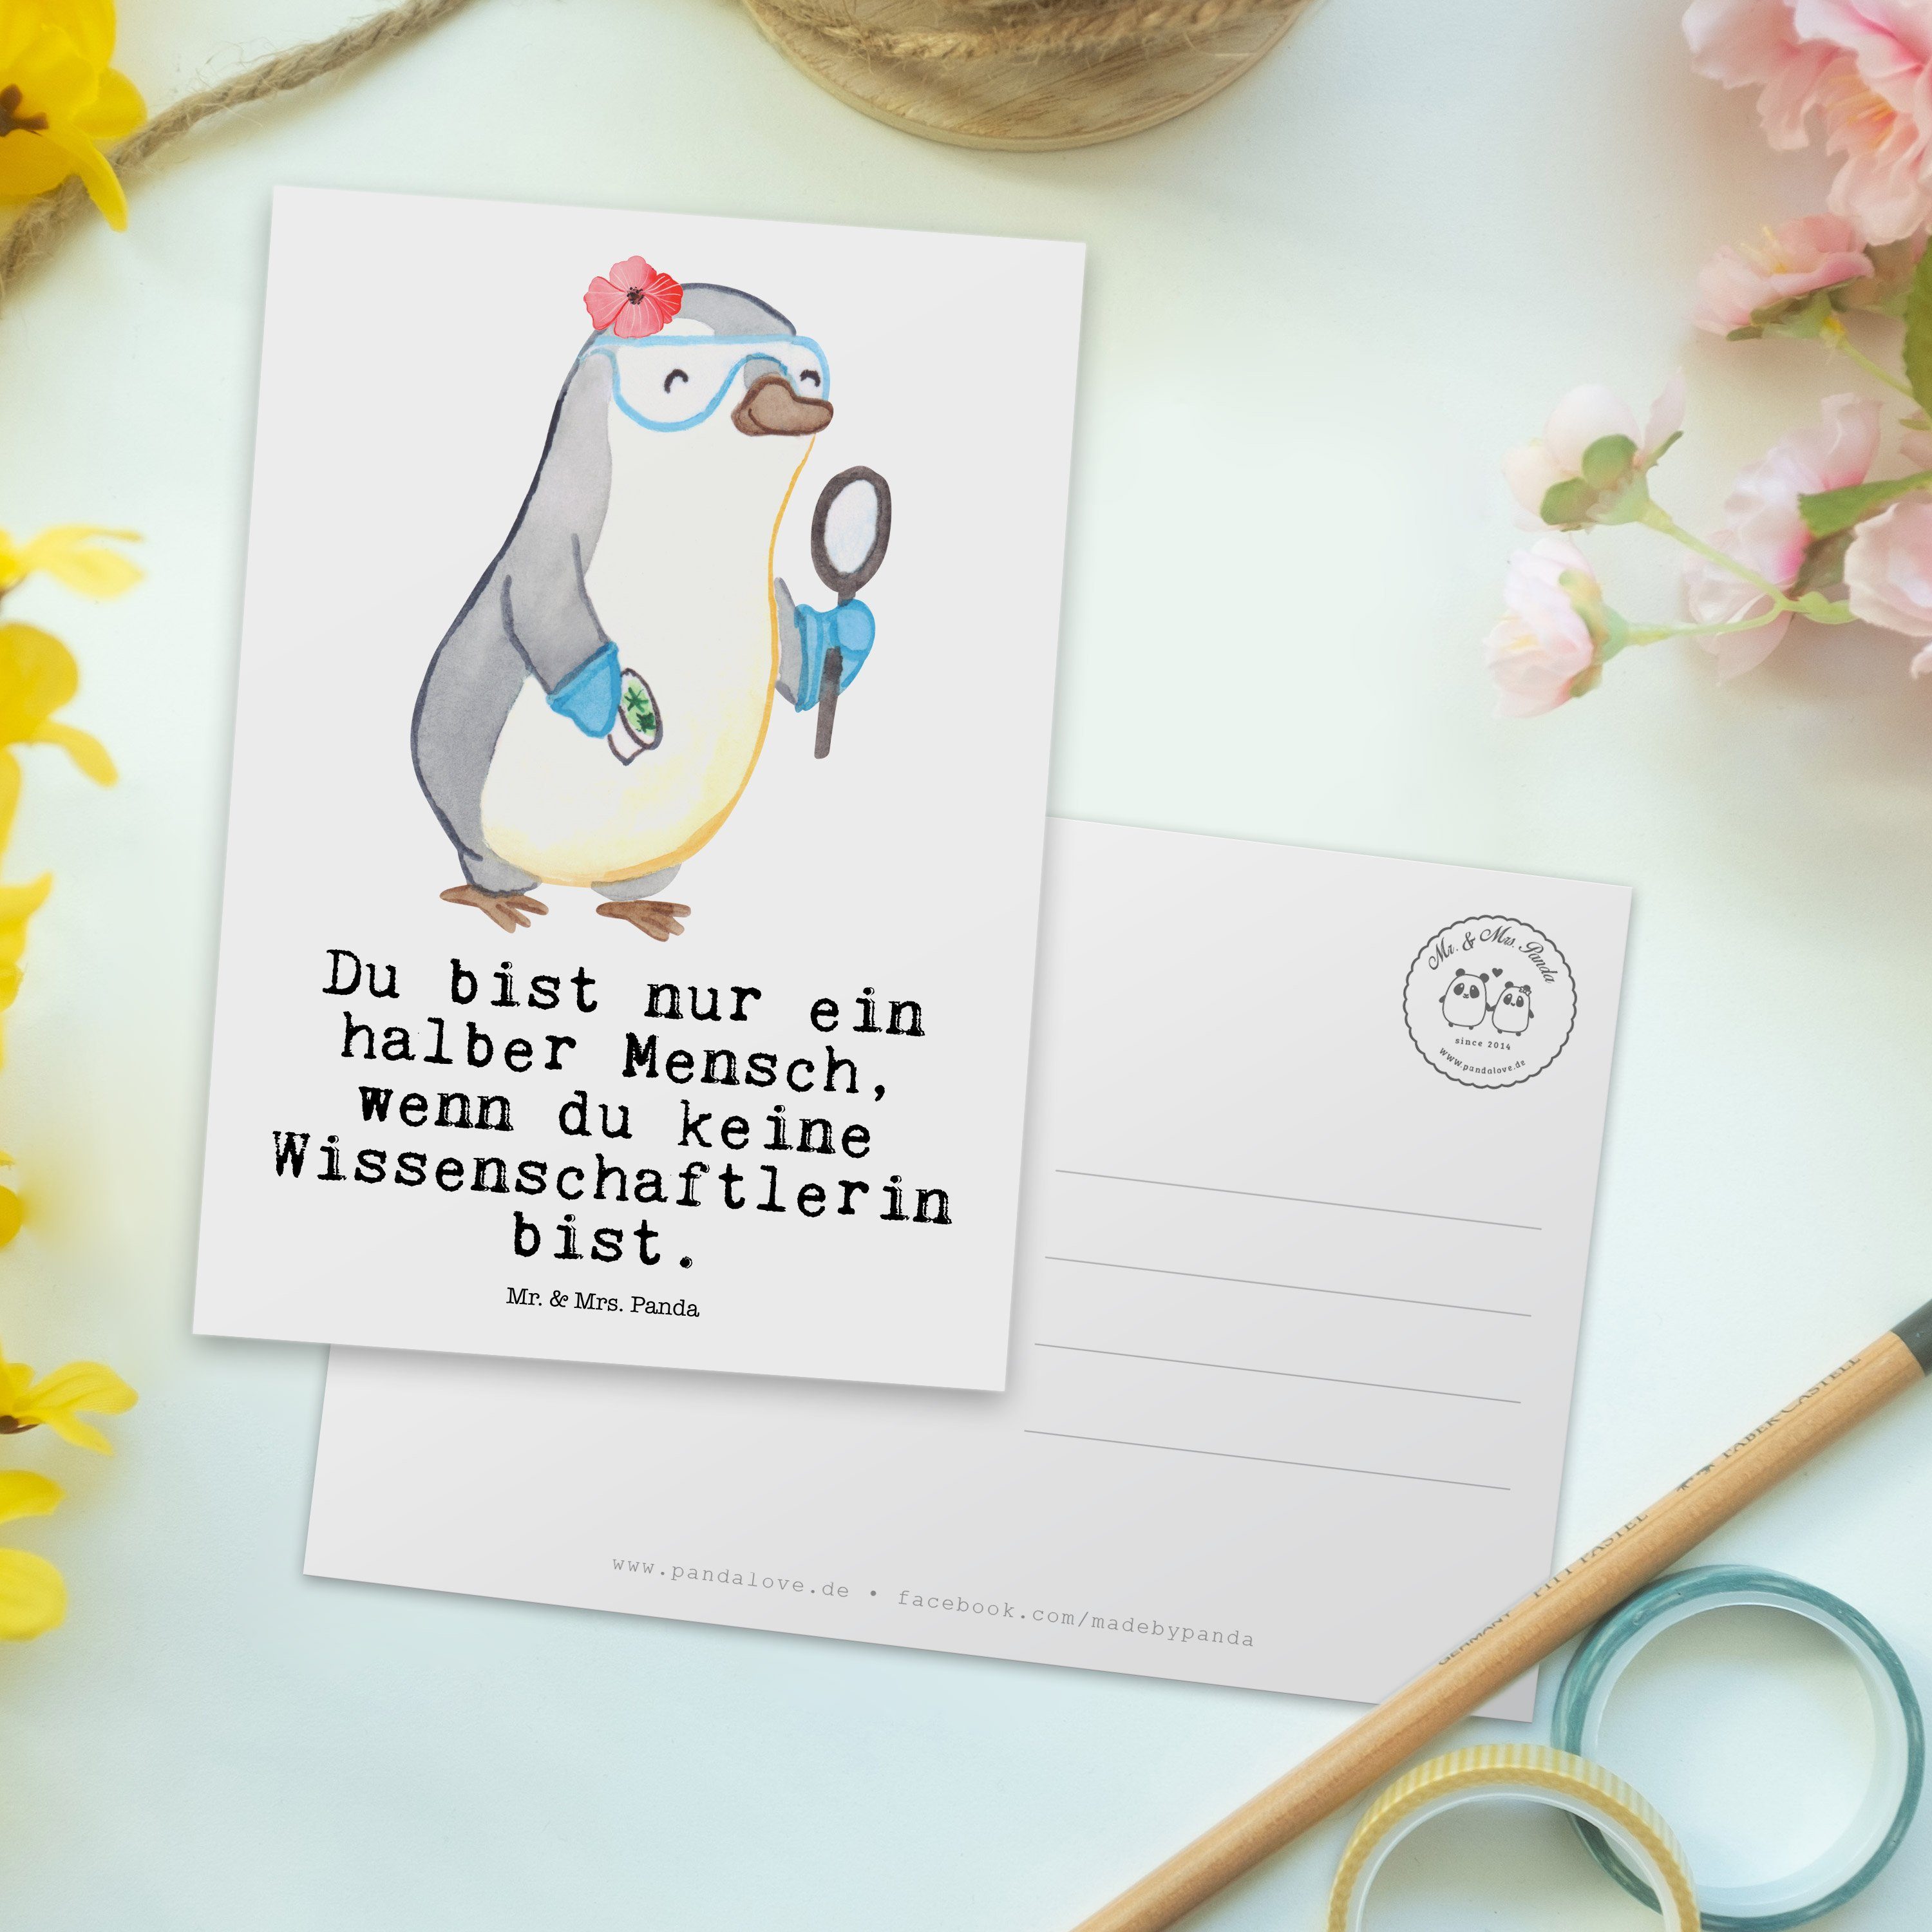 Mr. Herz Wissenschaftlerin Weiß - & Geschenk, - mit Postkarte Panda Mrs. Forschungseinrichtung